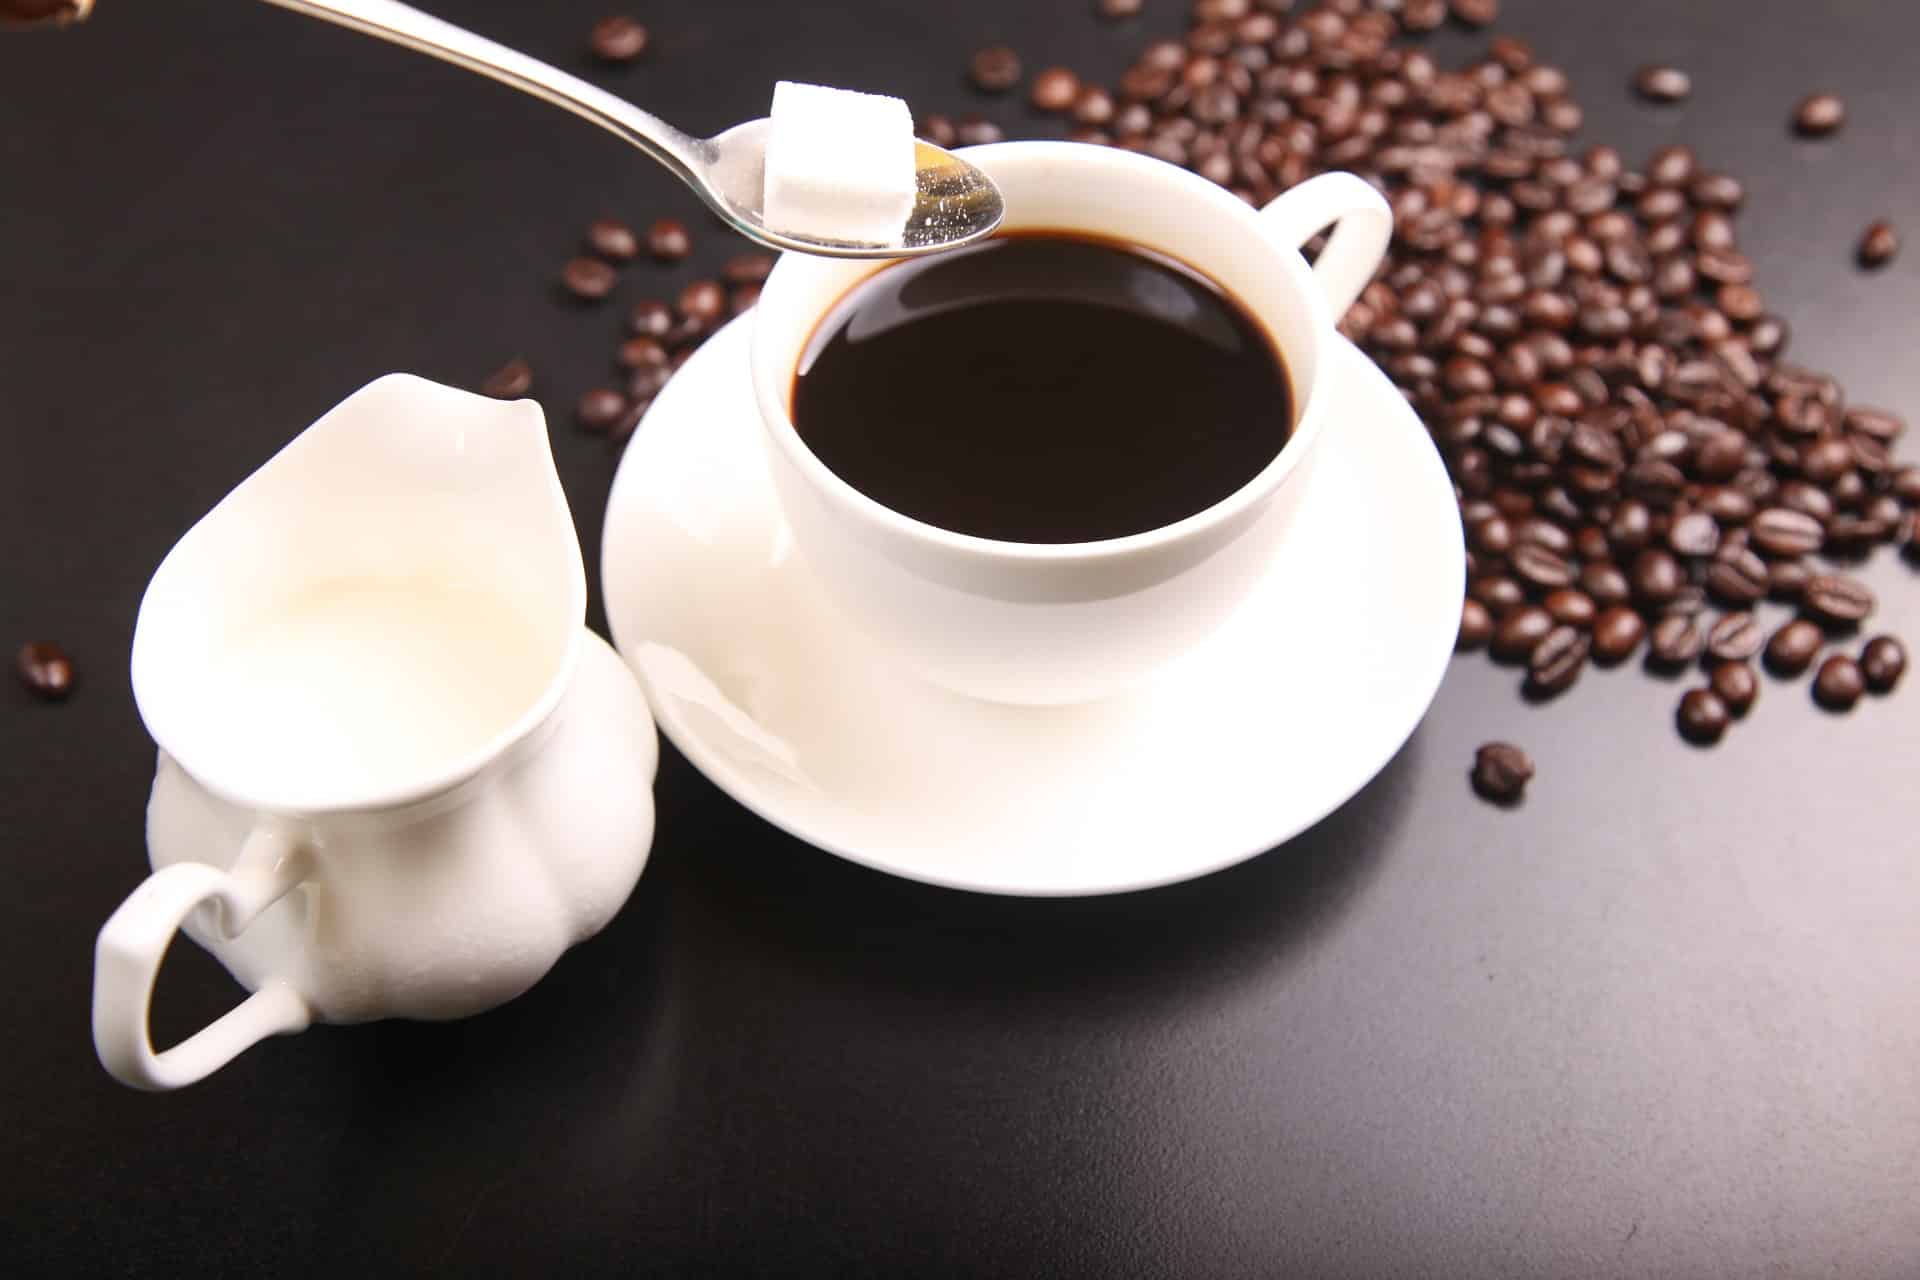 Die lieben alten Kaffee-Mythen und 3 Fakten dazu